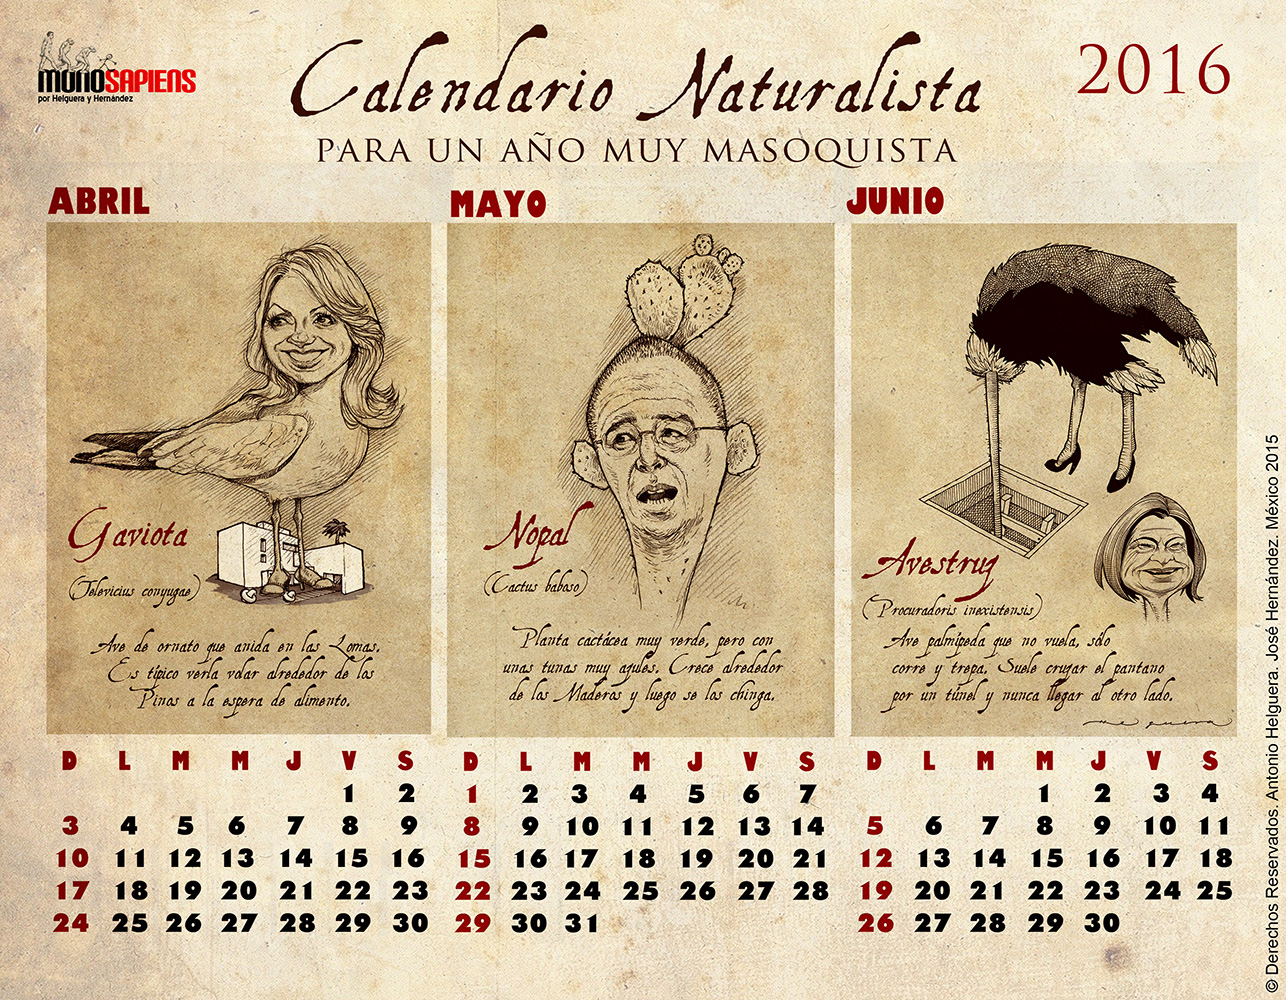 Calendario Naturalista para un año muy masoquista. 2016. Diciembre 2015.